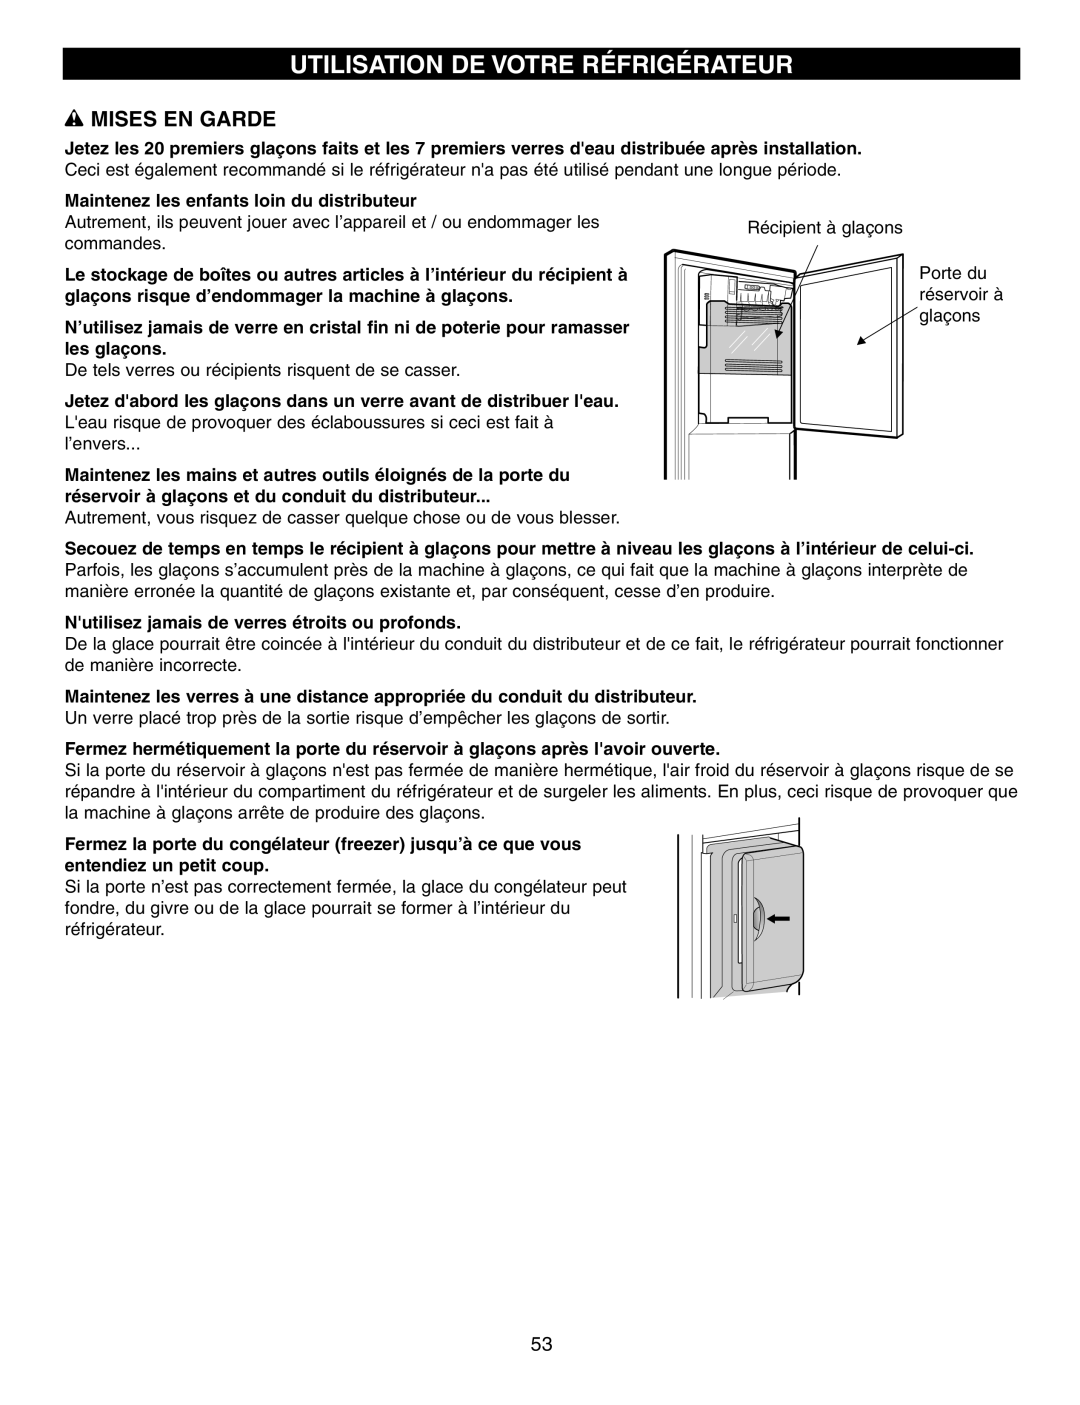 LG Electronics LFX21970 Utilisation De Votre Réfrigérateur, w MISES EN GARDE, Maintenez les enfants loin du distributeur 